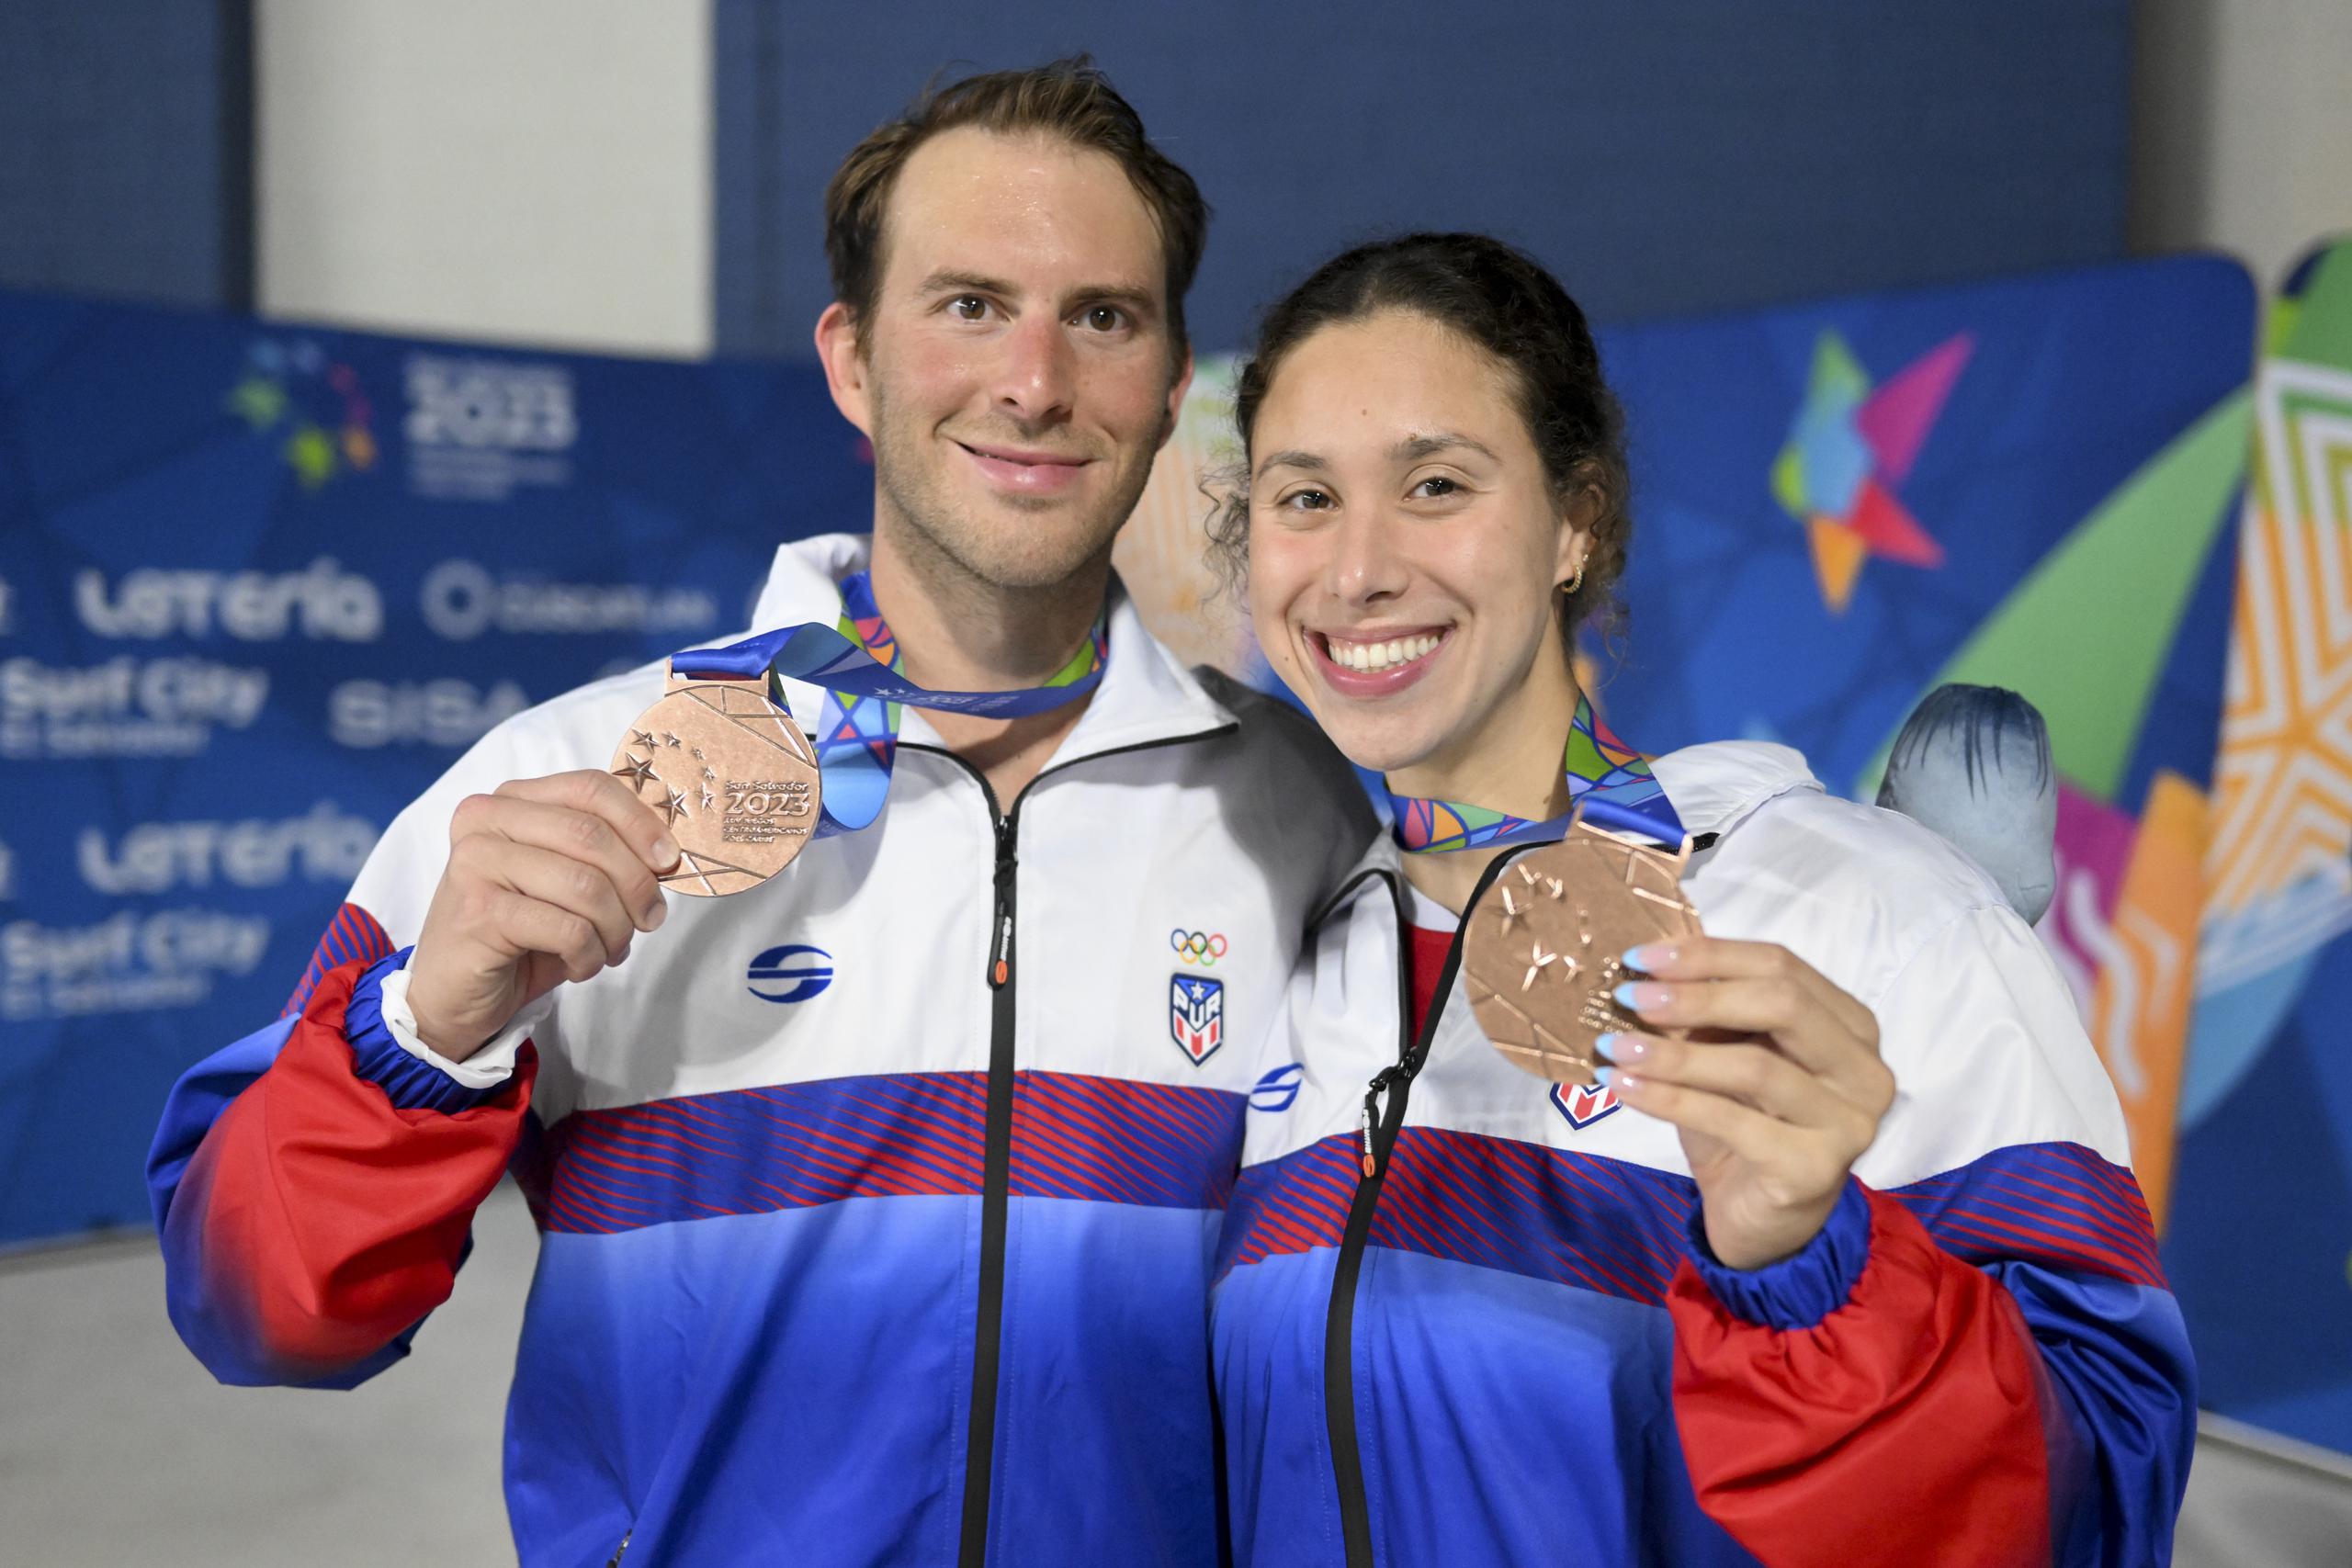 Los nadadores suman dos preseas de bronce al medallero boricua.